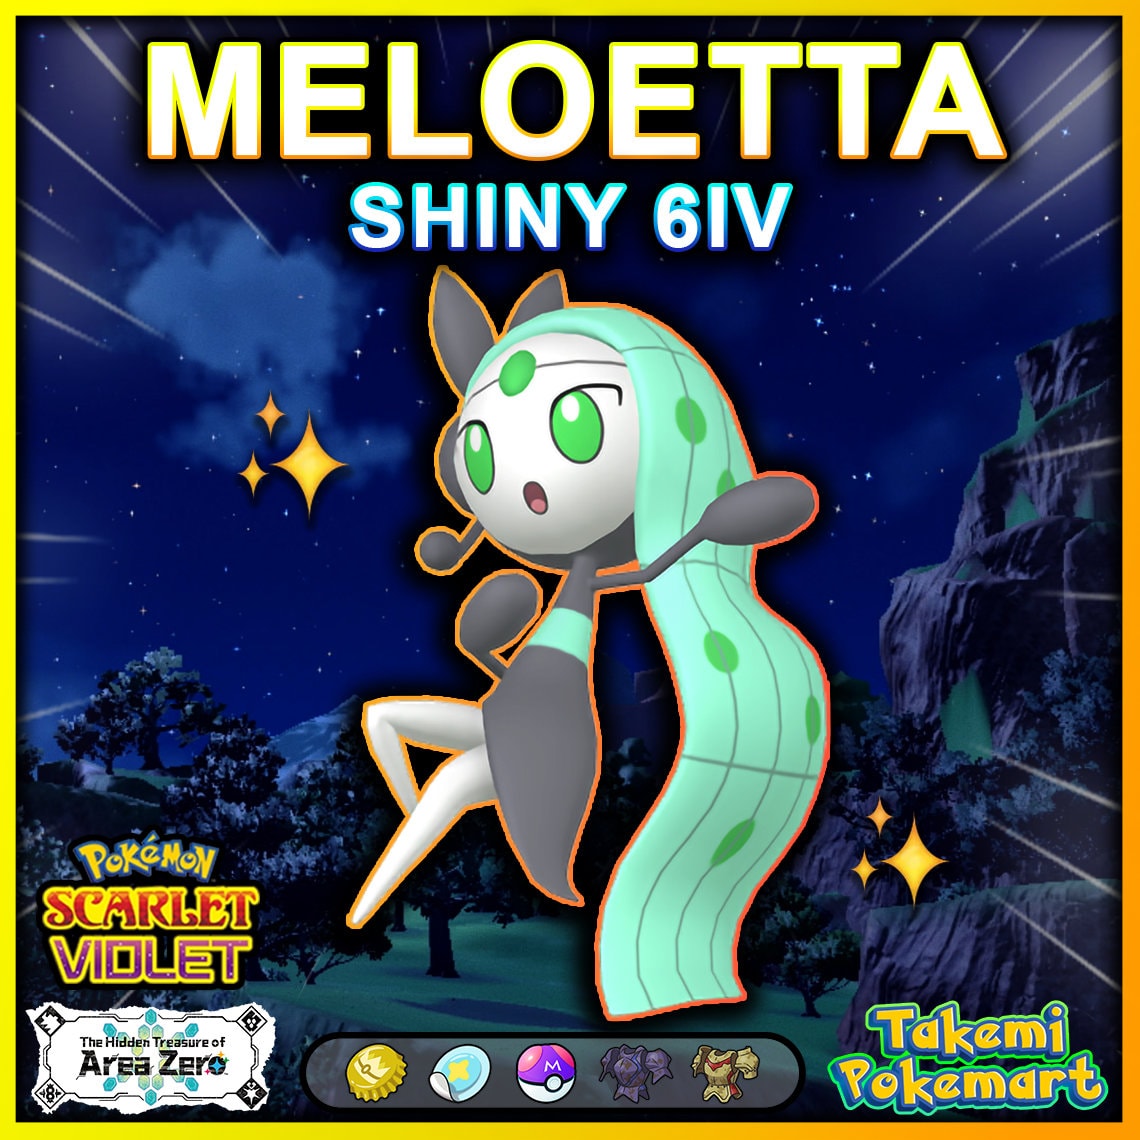 art trade for meloetta-shiny by pokemonlpsfan 